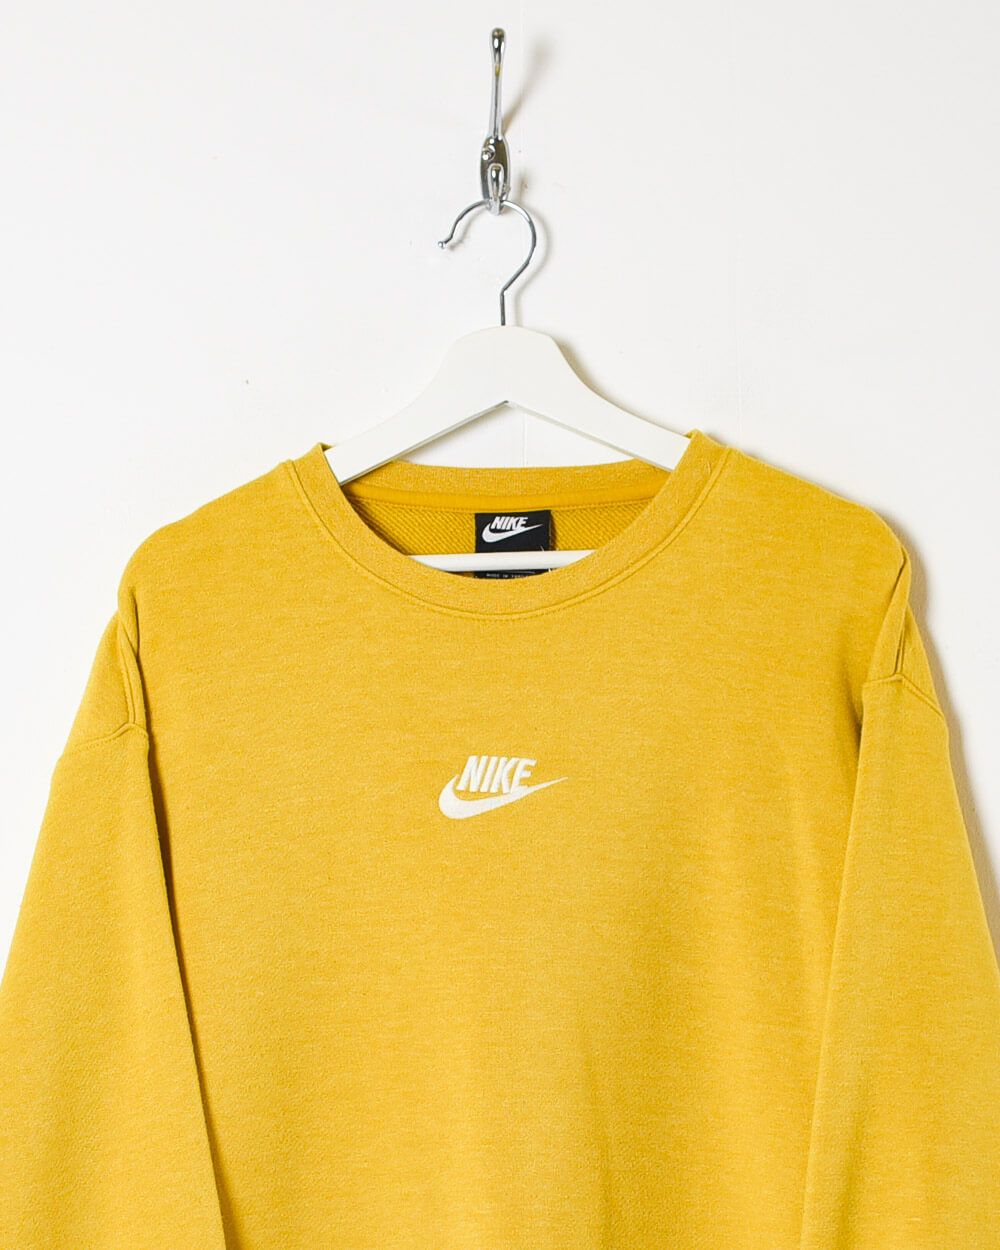 Yellow Nike Sweatshirt - Medium